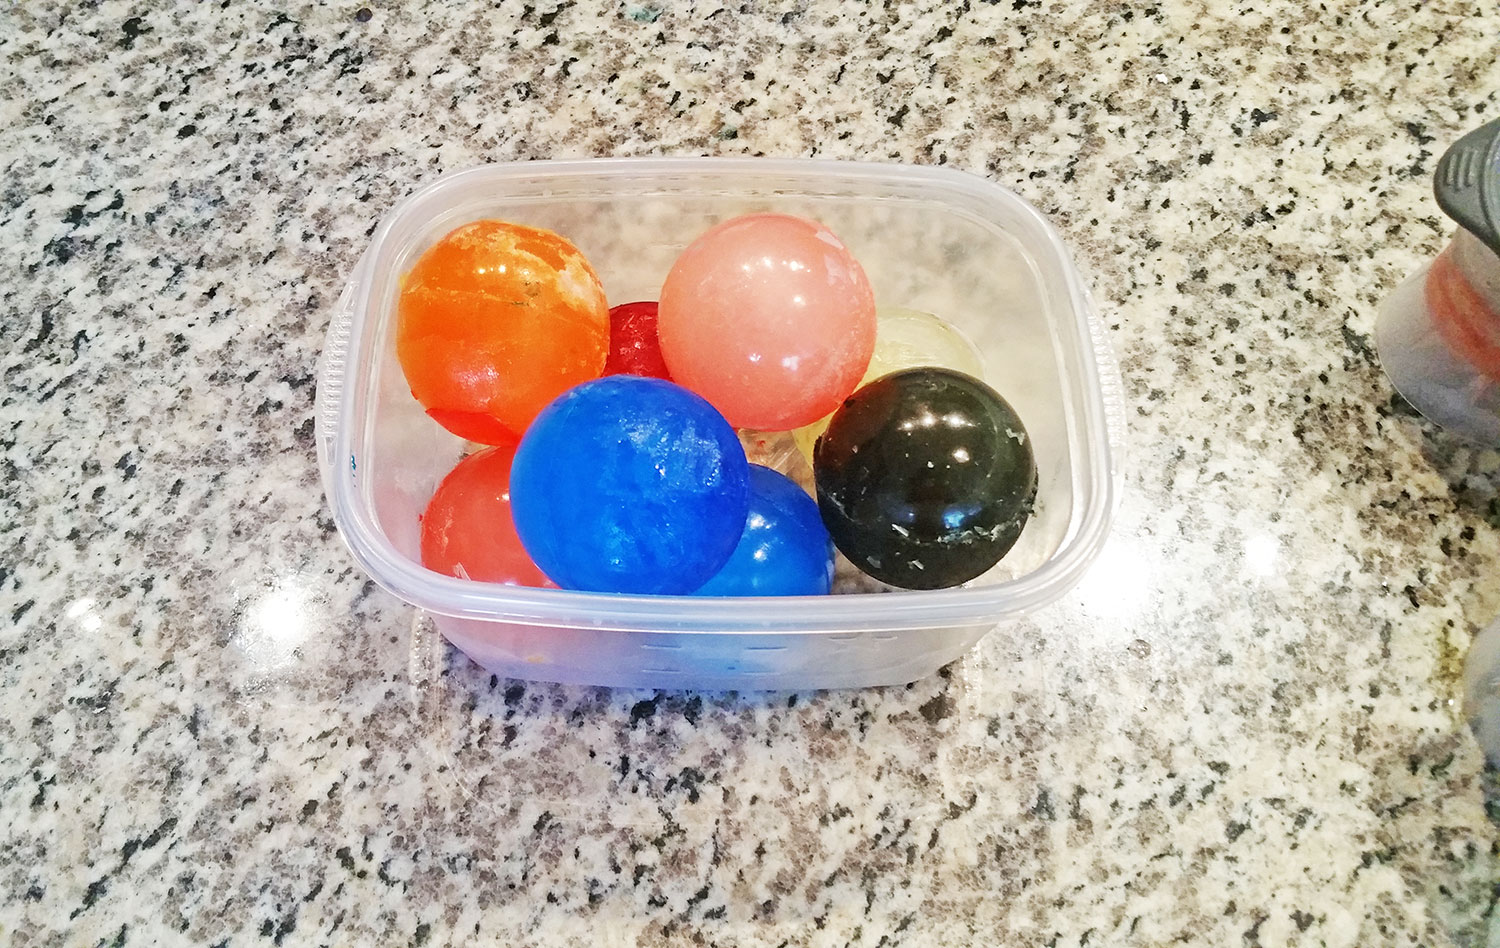 Kool-Aid ice balls